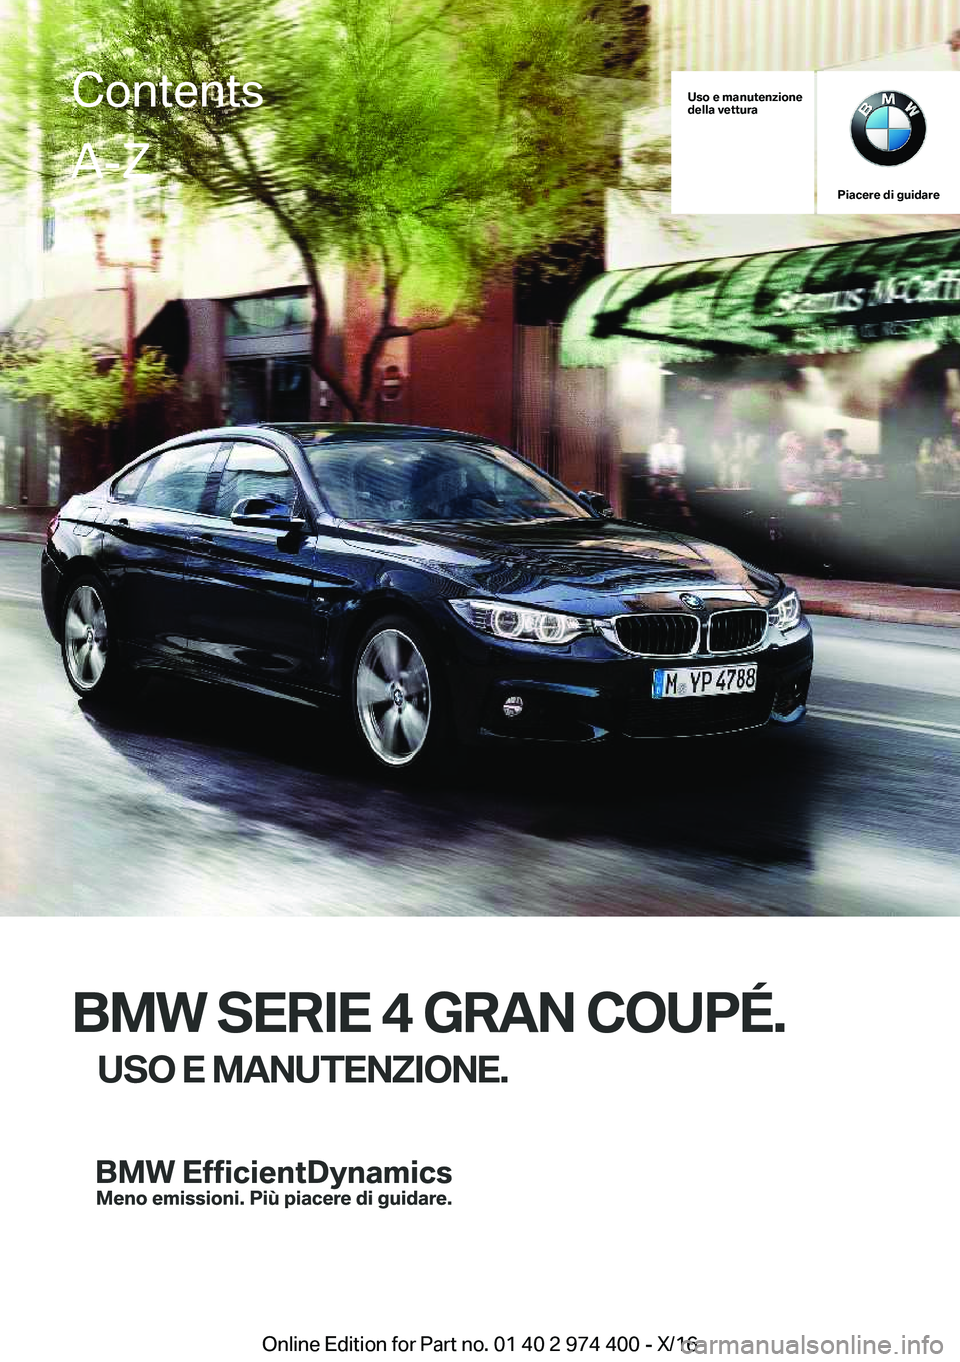 BMW 4 SERIES GRAN COUPE 2017  Libretti Di Uso E manutenzione (in Italian) �U�s�o��e��m�a�n�u�t�e�n�z�i�o�n�e
�d�e�l�l�a��v�e�t�t�u�r�a
�P�i�a�c�e�r�e��d�i��g�u�i�d�a�r�e
�B�M�W��S�E�R�I�E��4��G�R�A�N��C�O�U�P�